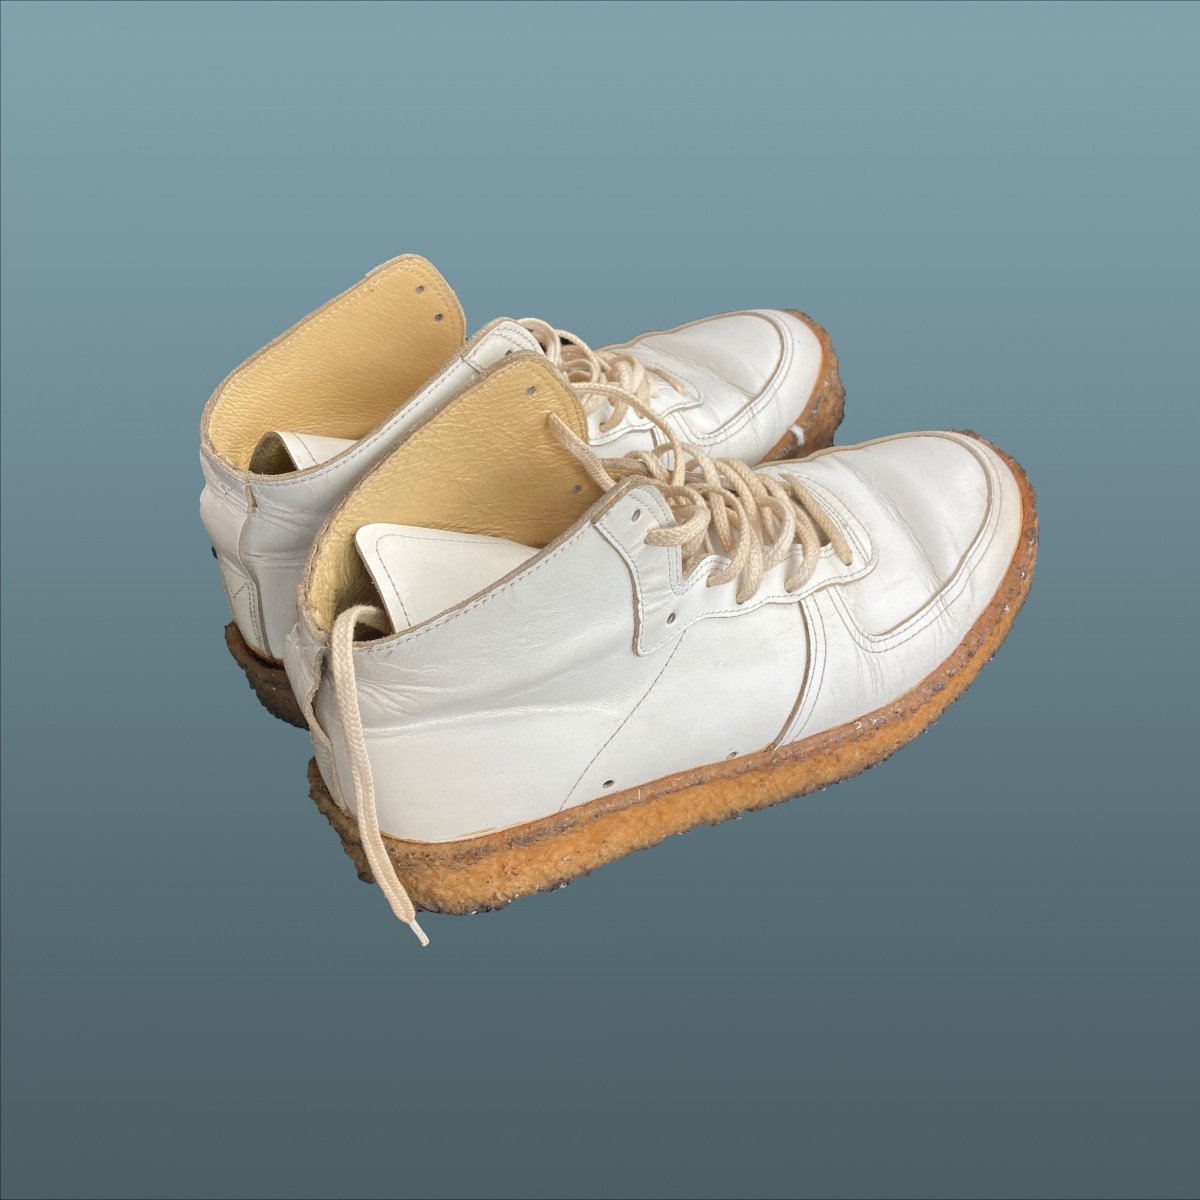 1996 OG sneakers - 2